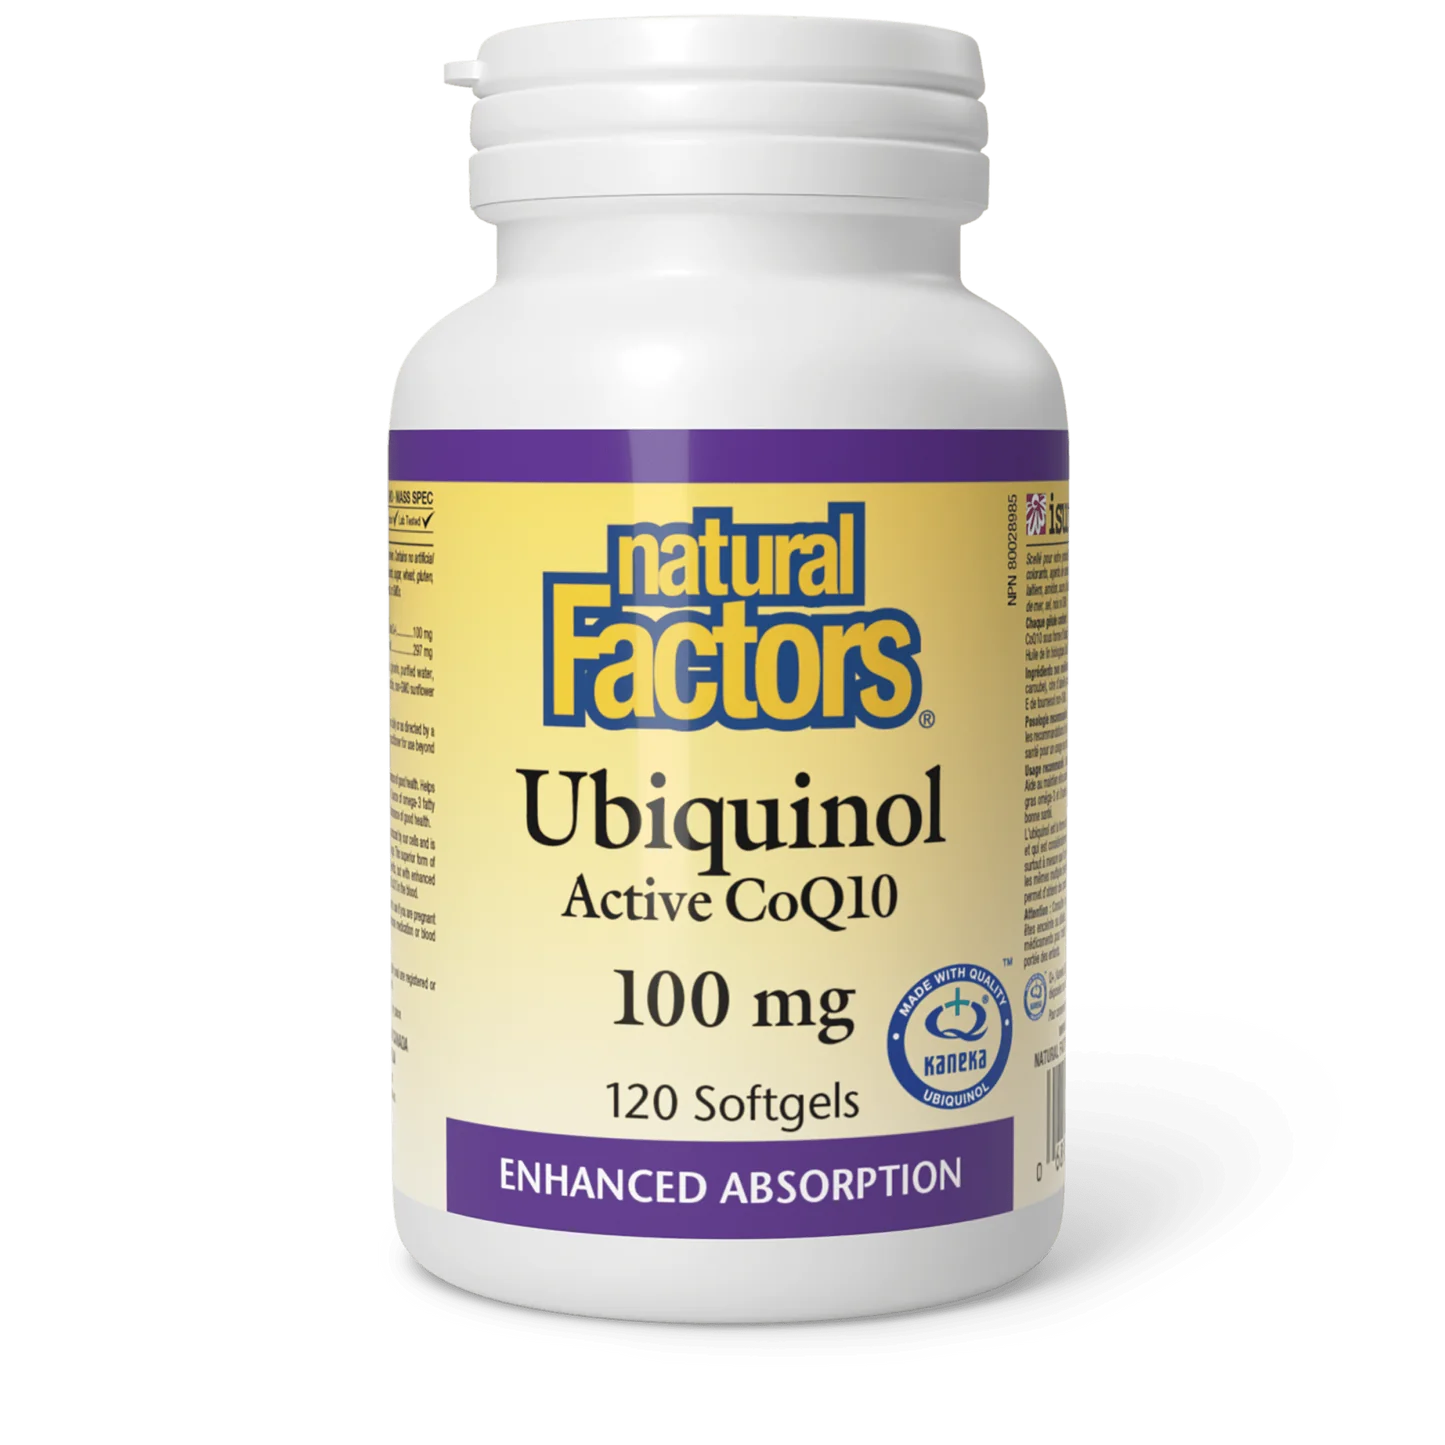 Natural Factors Ubiquinol Active CoQ10 100 mg 